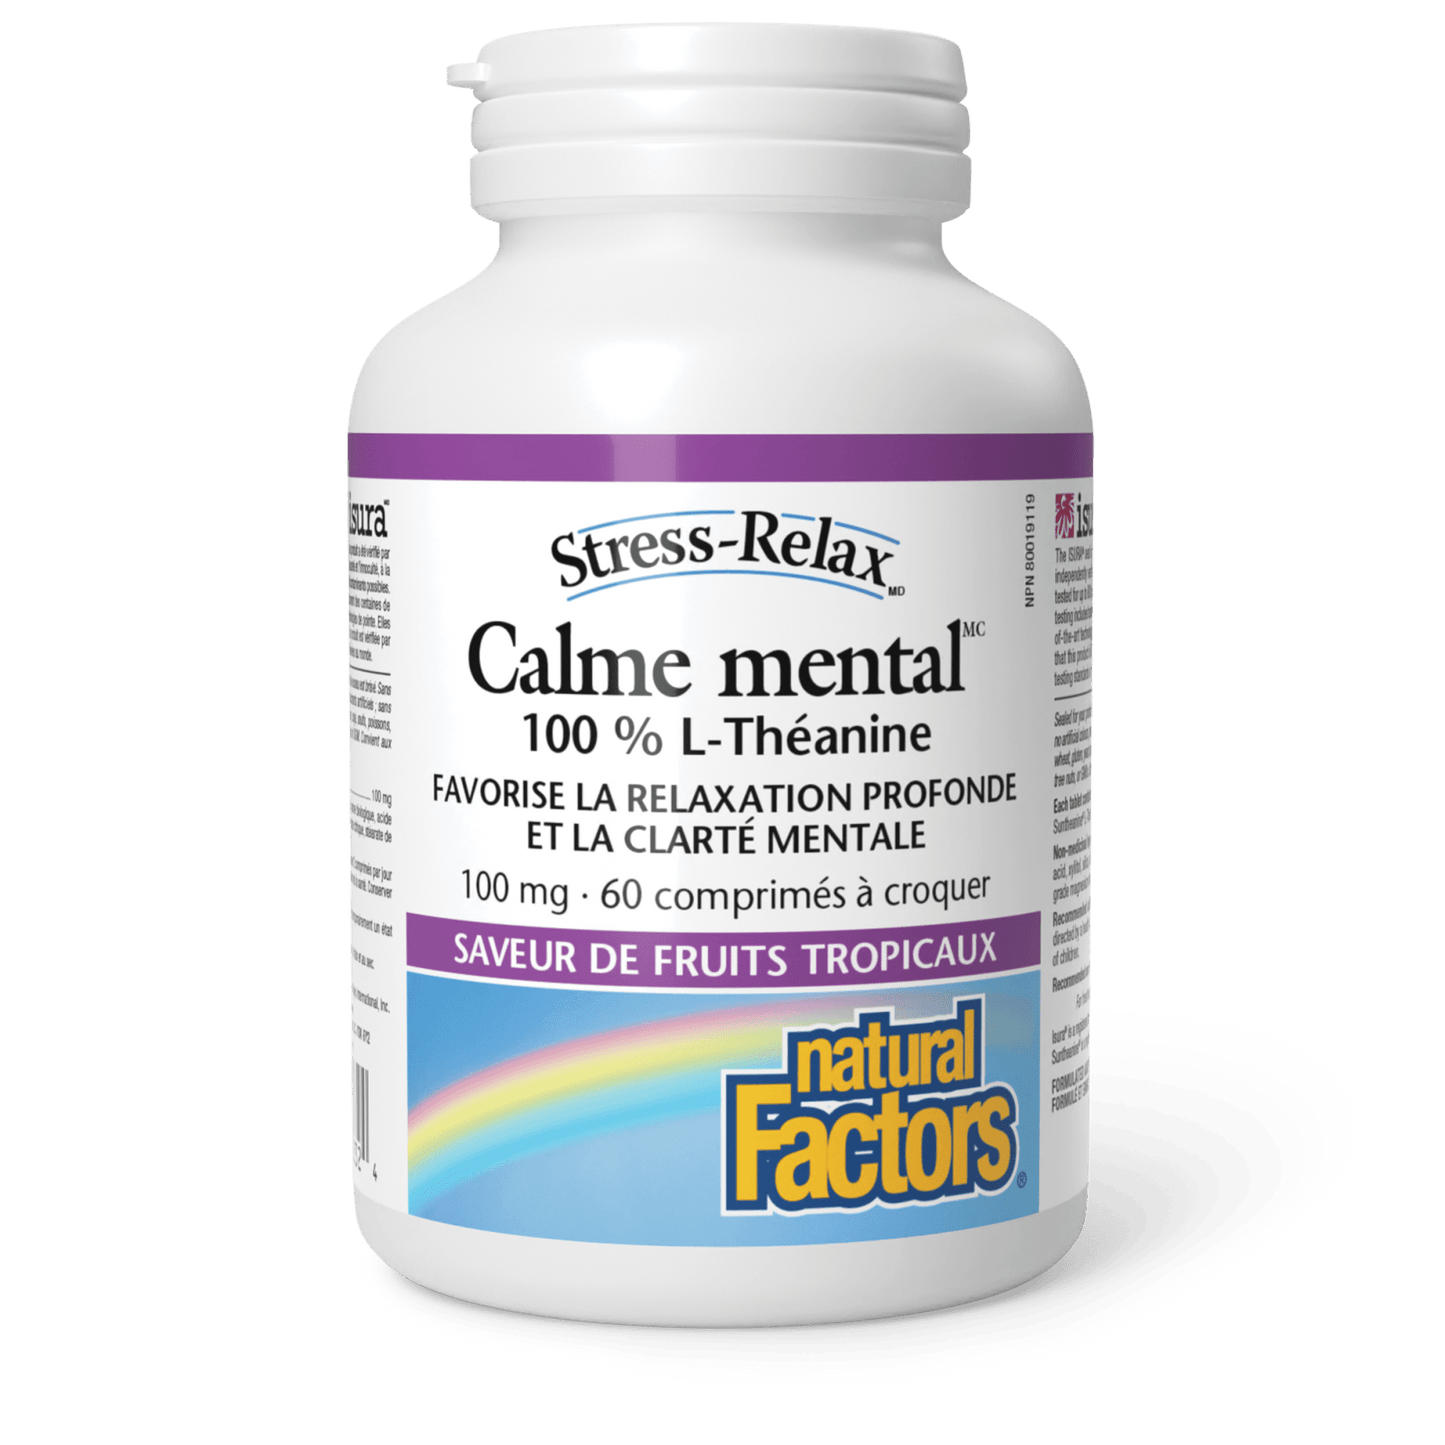 Calme mental 100 mg, Stress-Relax, Natural Factors|v|image|2832